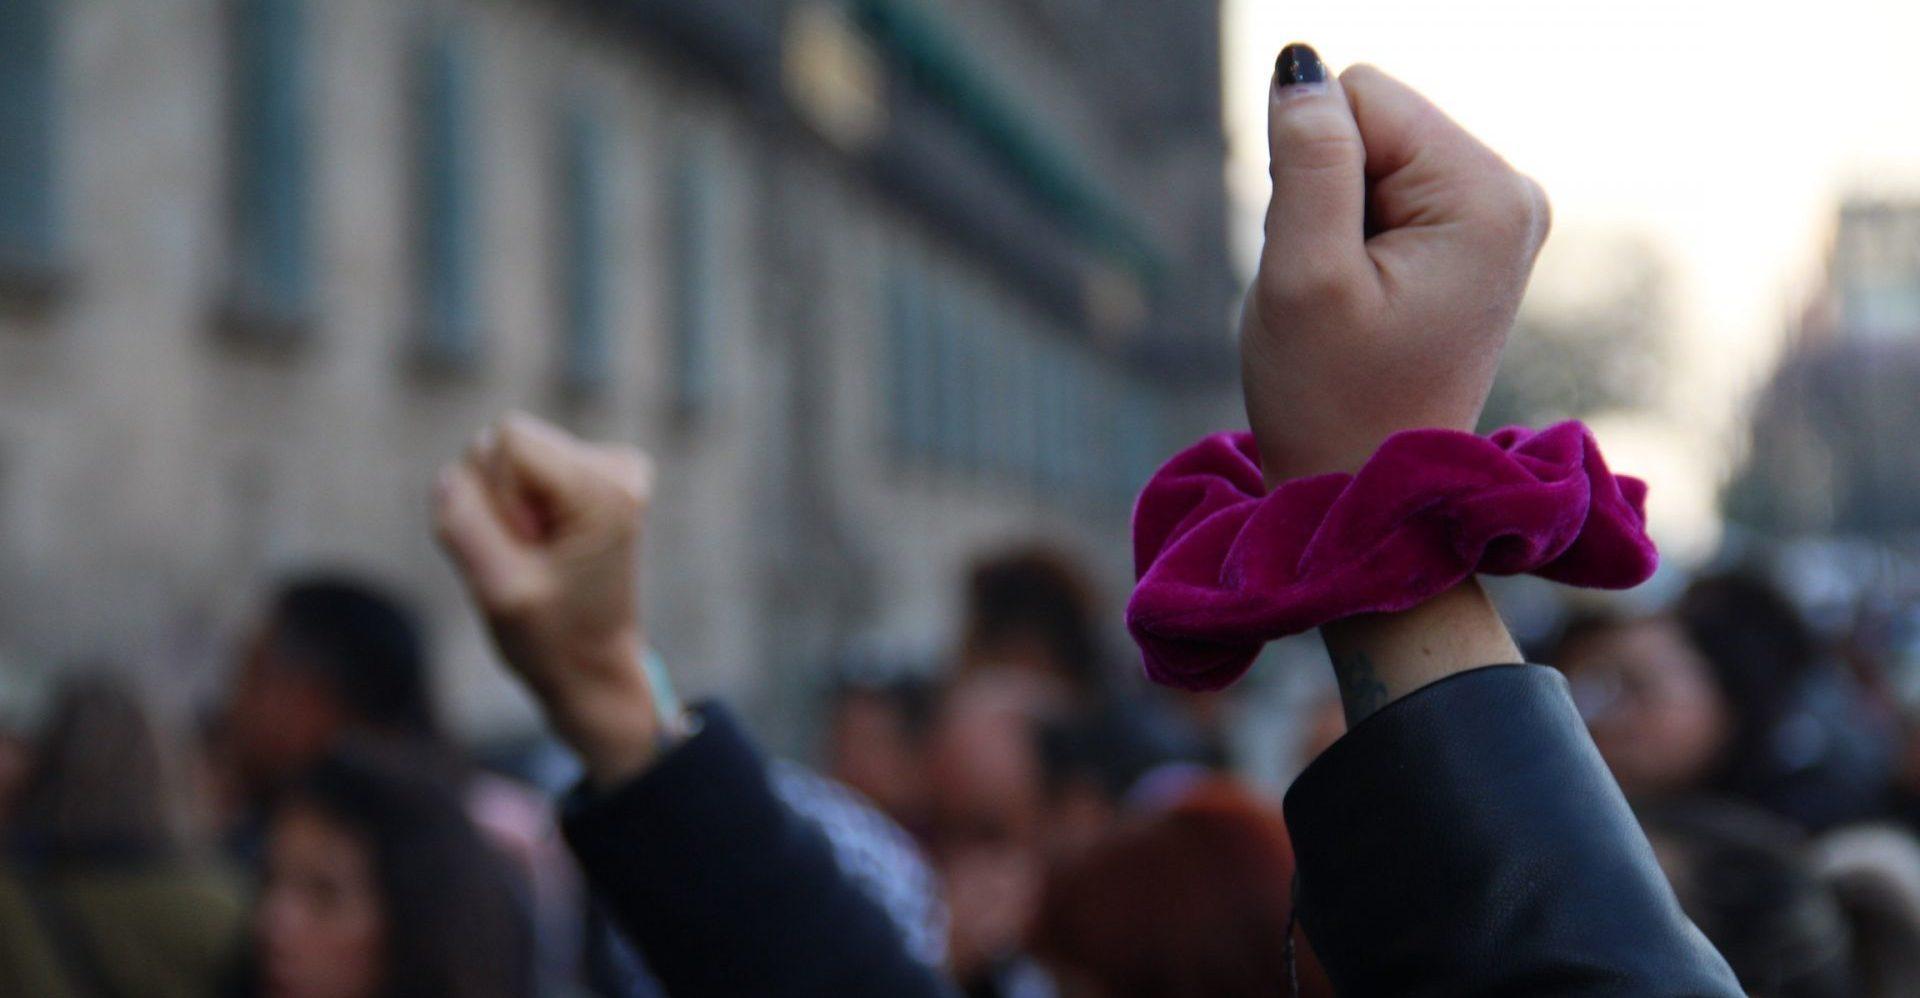 Mujeres protestan contra Félix Salgado frente a Palacio Nacional; policía de CDMX impide su paso